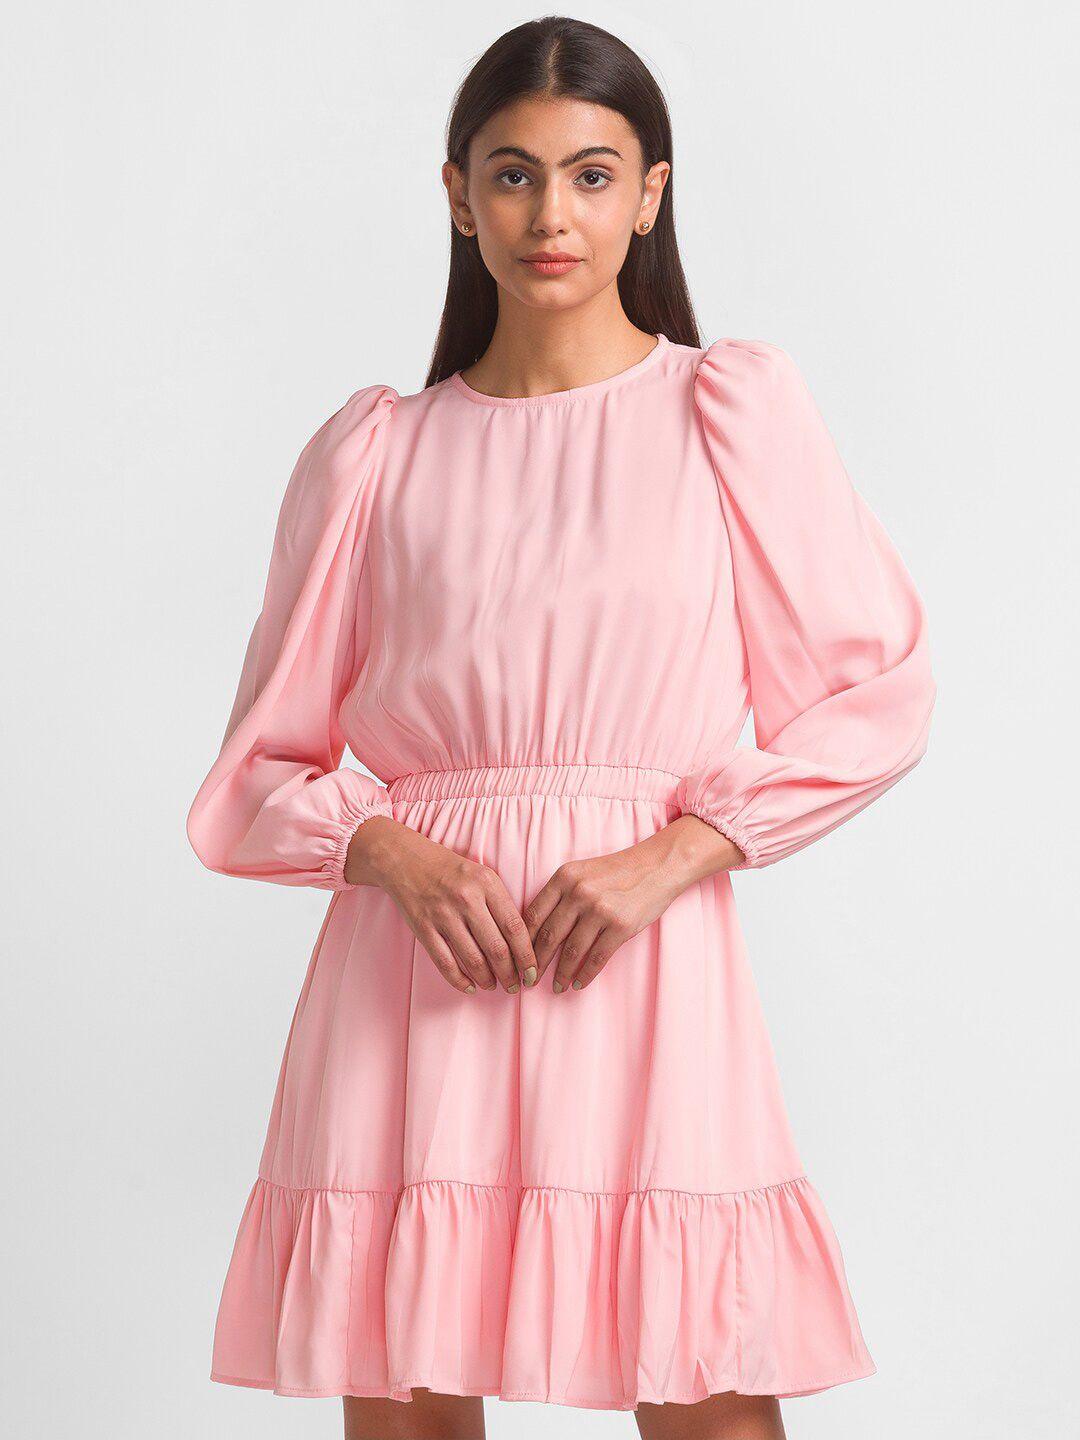 globus pink crepe dress